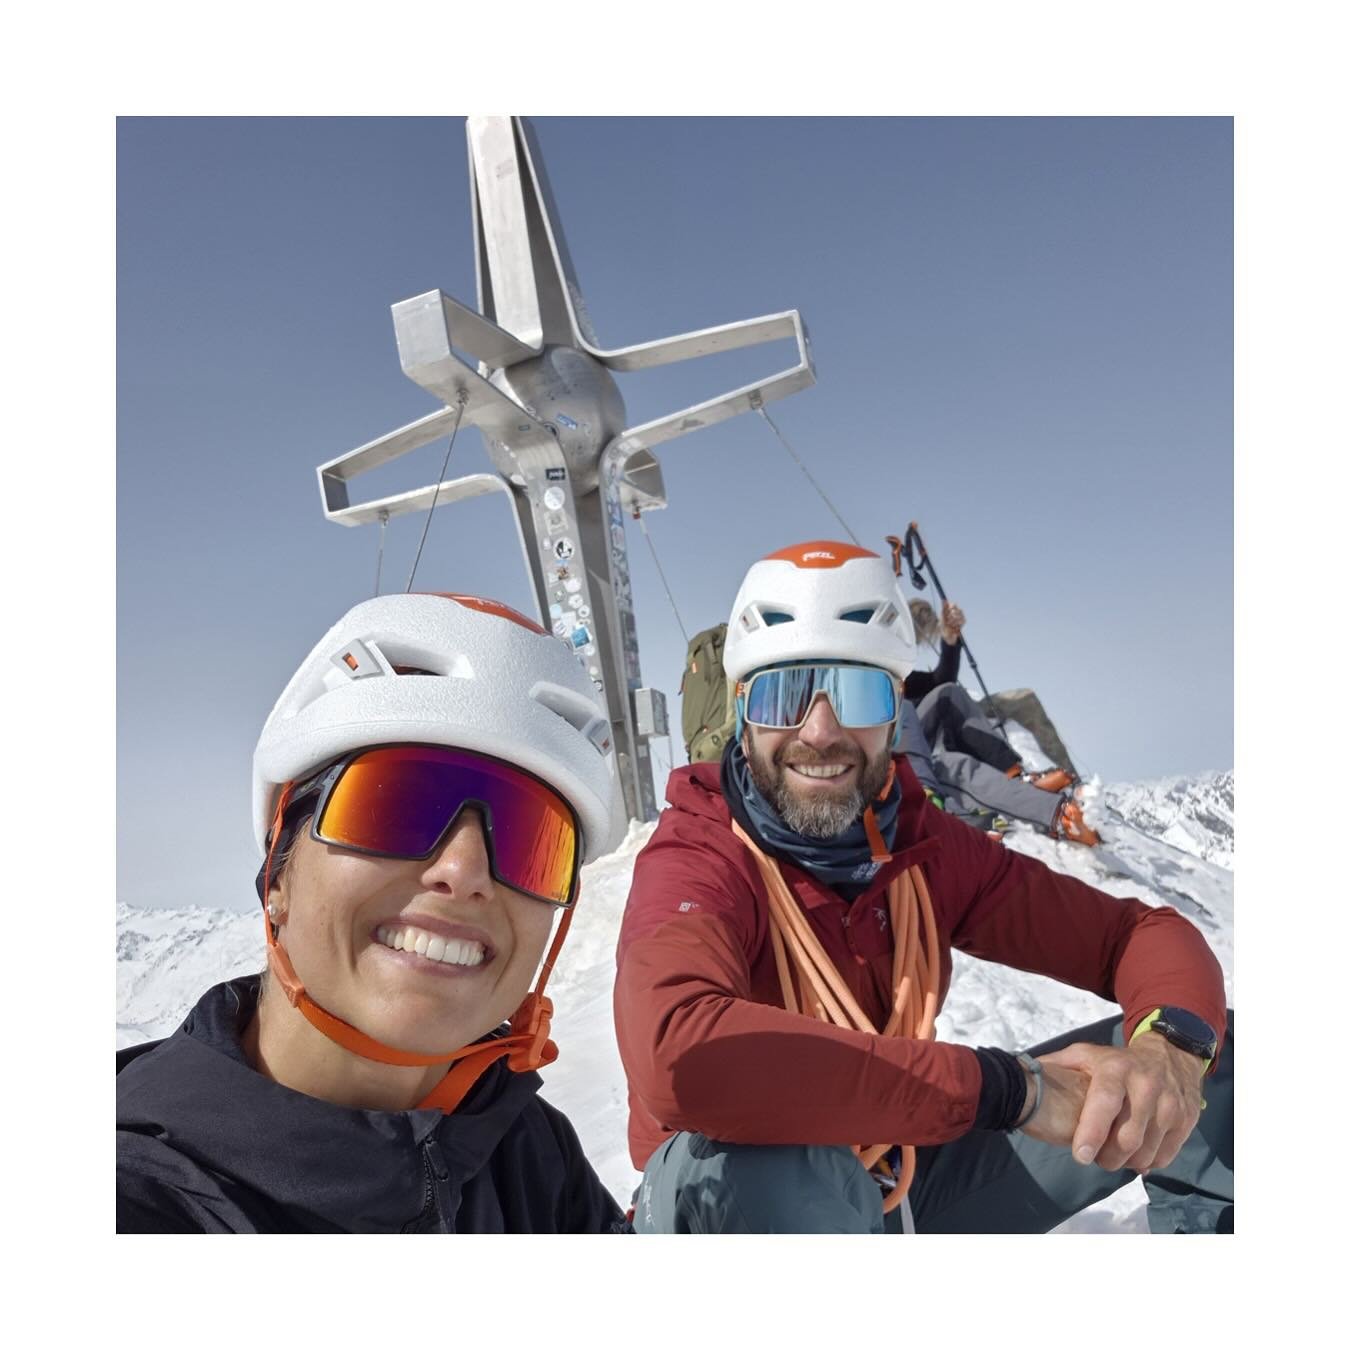 Ein traumhafter Tag in den hohen Stubaiern🏔️🤩⛏️⛷️
.
.
.
.
#skibergsteigen 
#skithochtour 
#lebenindenbergen 
#gratln 
#alpinism 
#urlaubindenbergen 
#winterwonderland